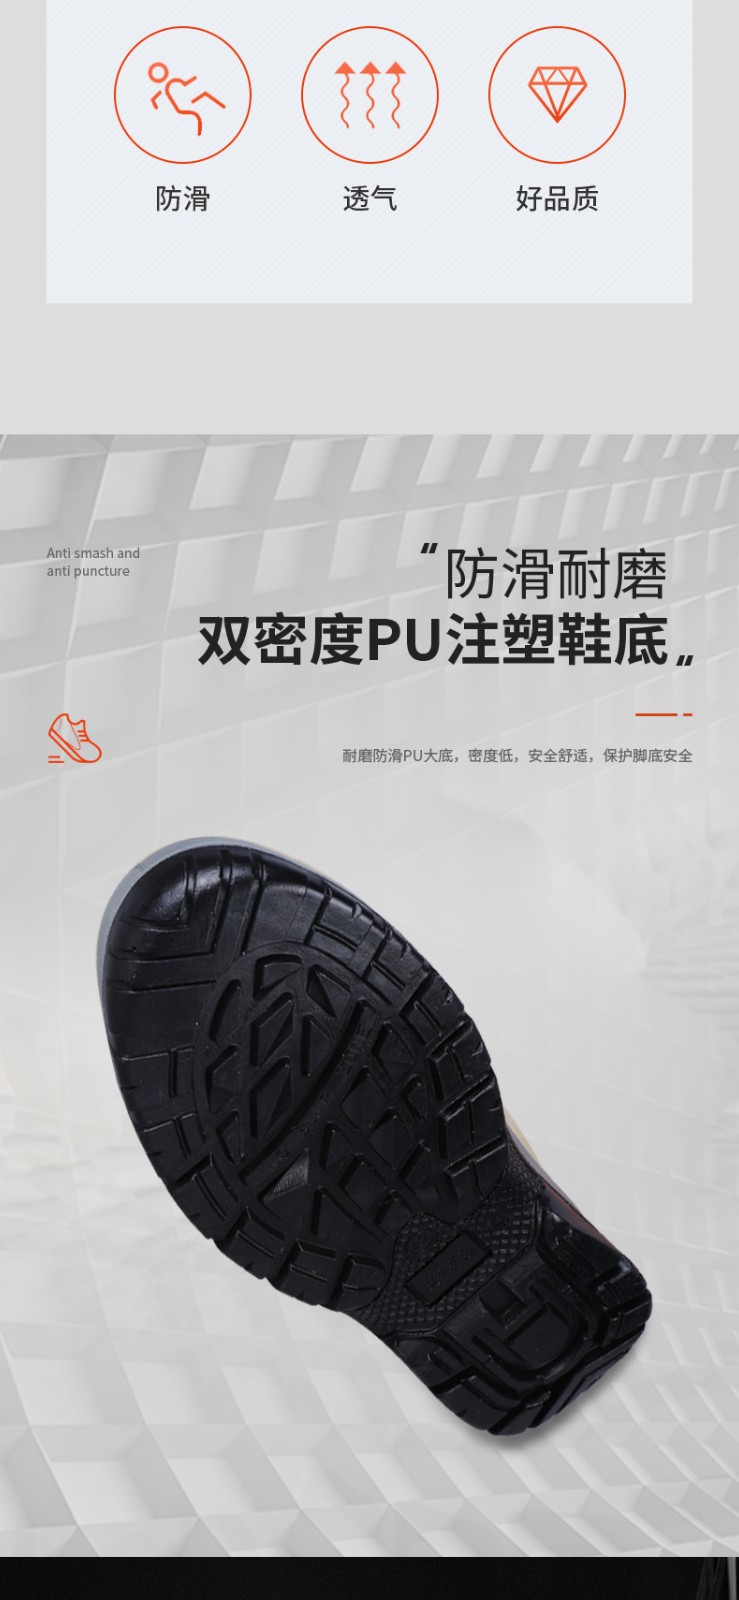 霍尼韦尔 SHTP00403-35 New Tripper 电绝缘 保护足趾 04款 安全鞋-35